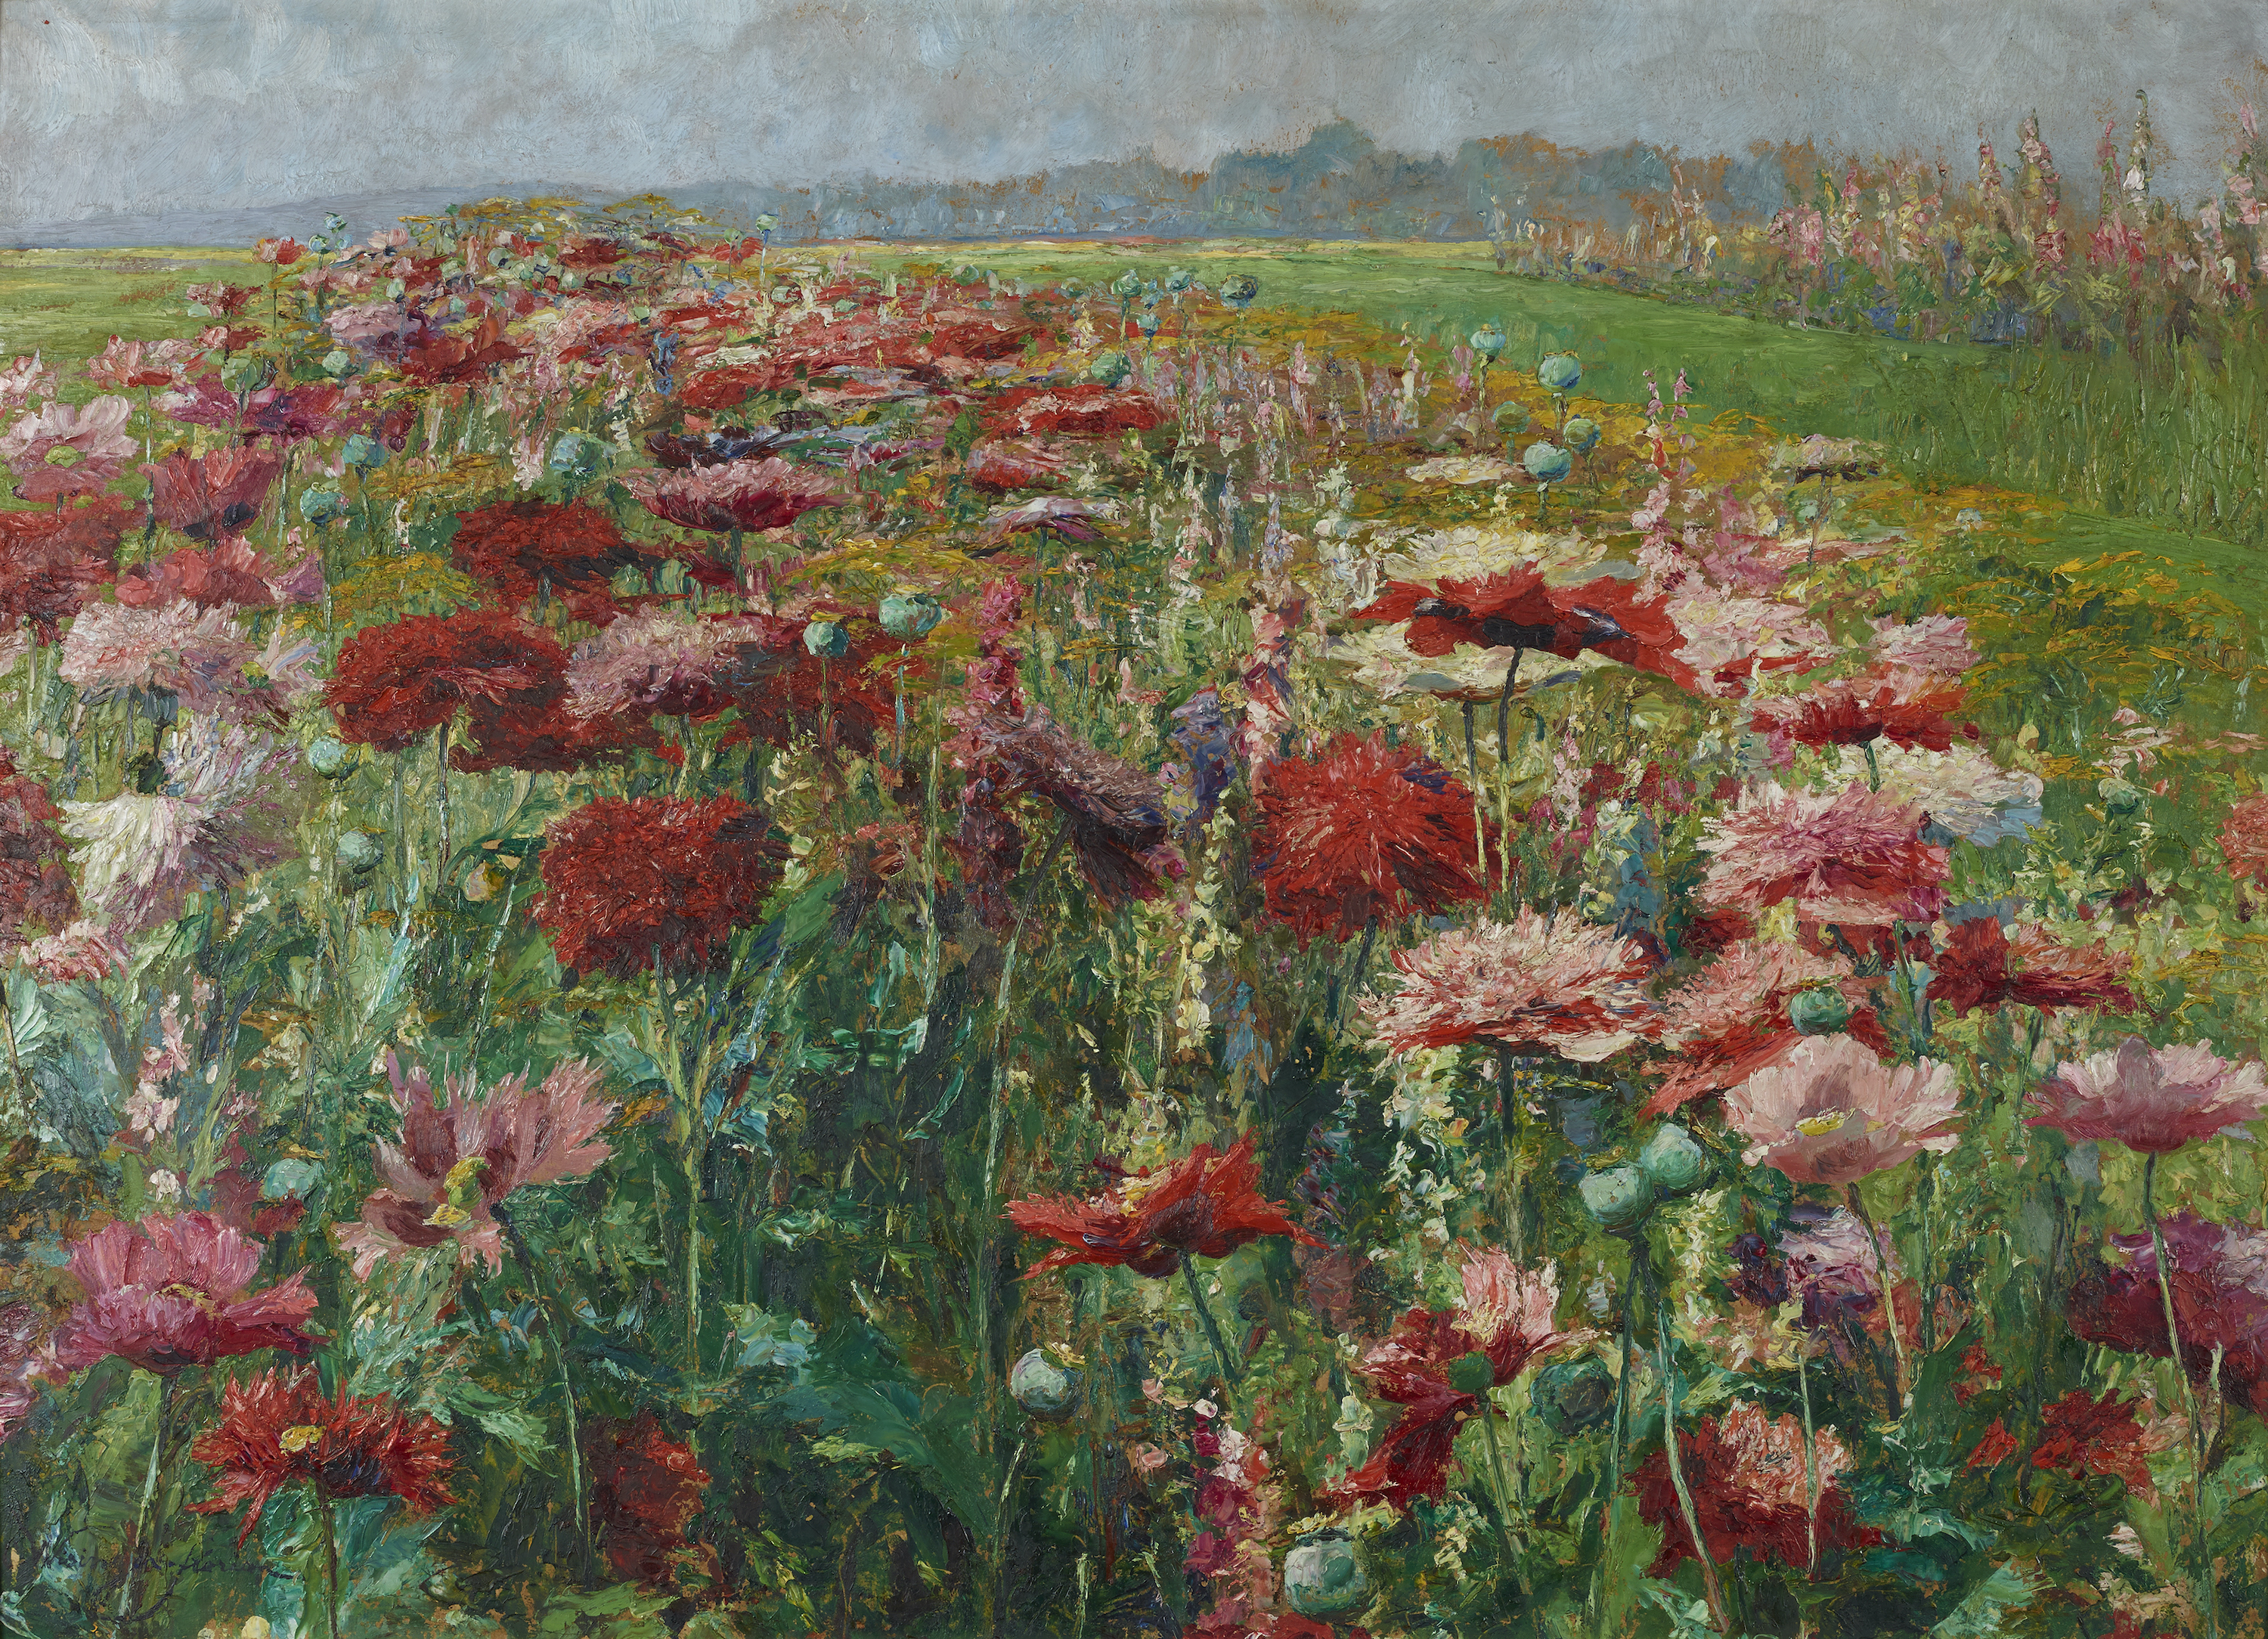 Blooming Poppy by Olga Wisinger-Florian - c. 1895/1900 - 70 x 98 cm Österreichische Galerie Belvedere